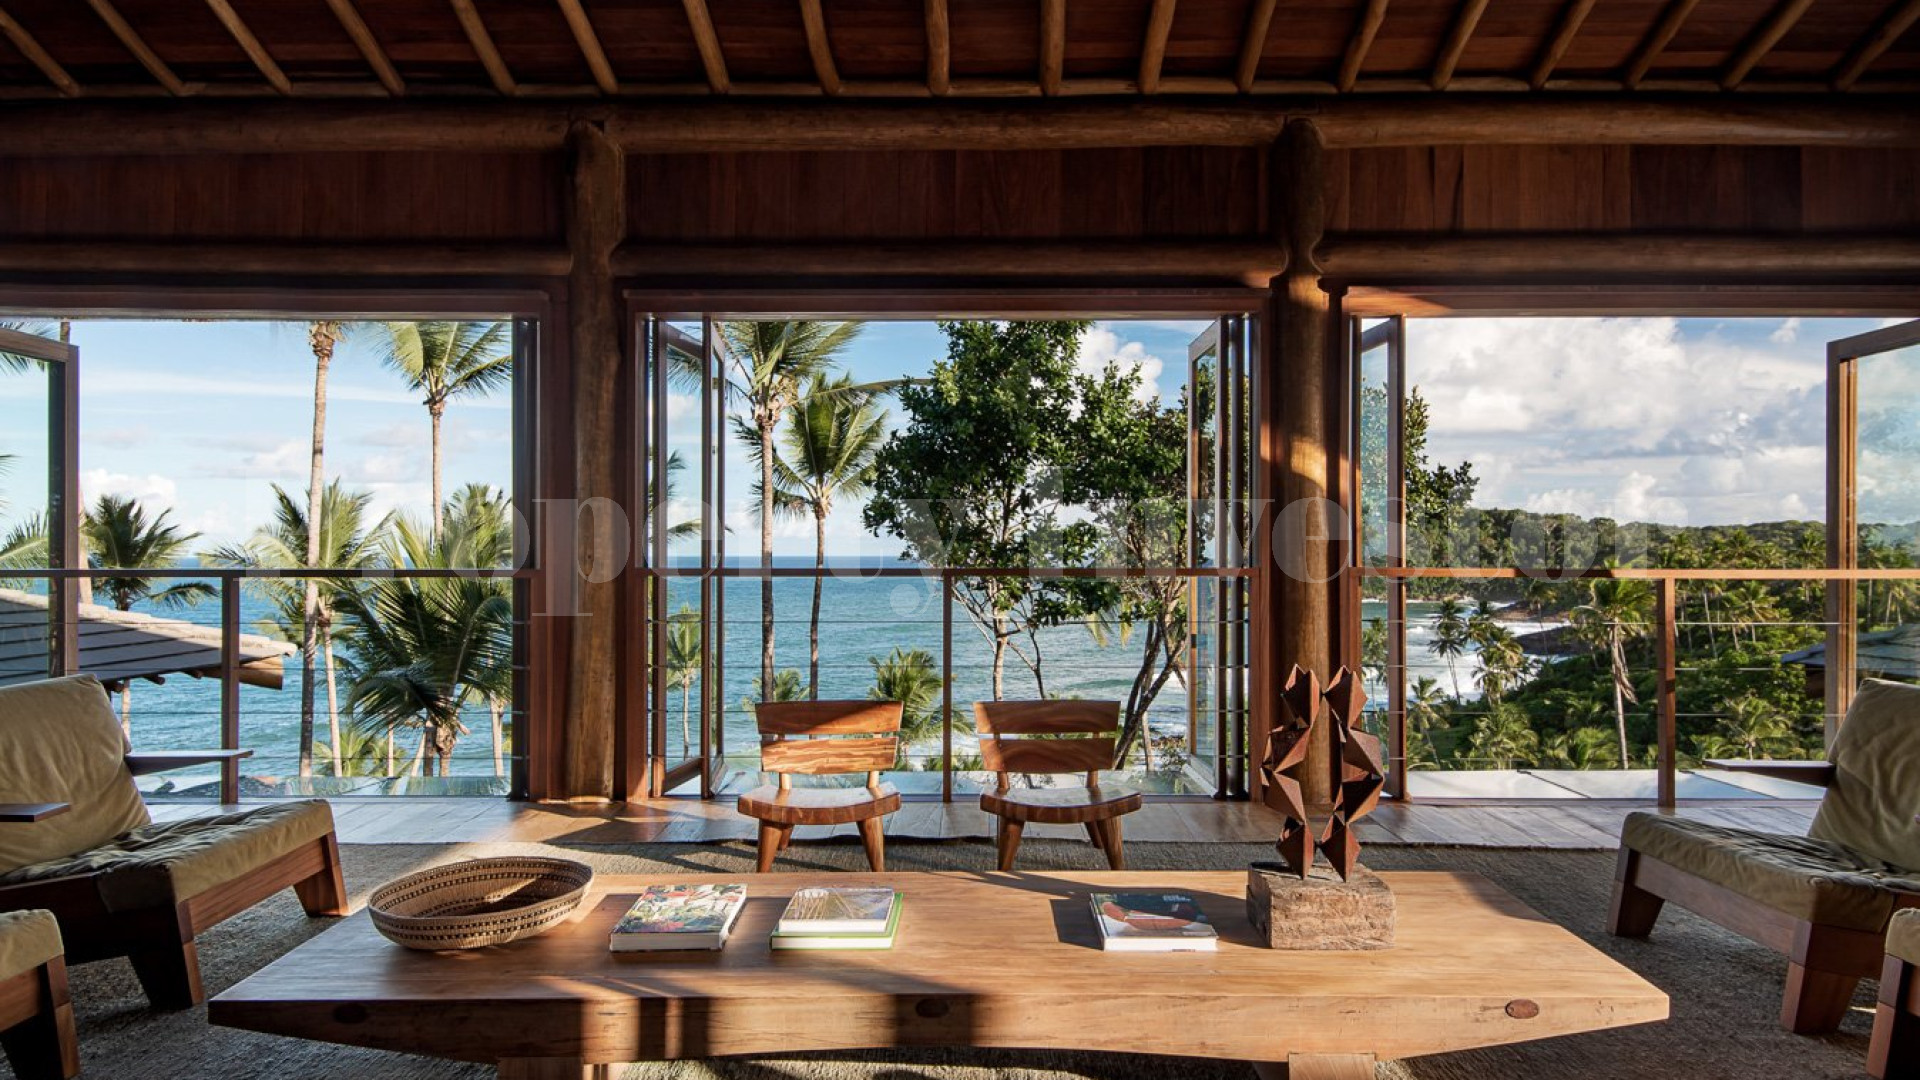 Продаётся восхитительная роскошная курортная вилла на 6 спален на пляже в Итакаре, Бразилия